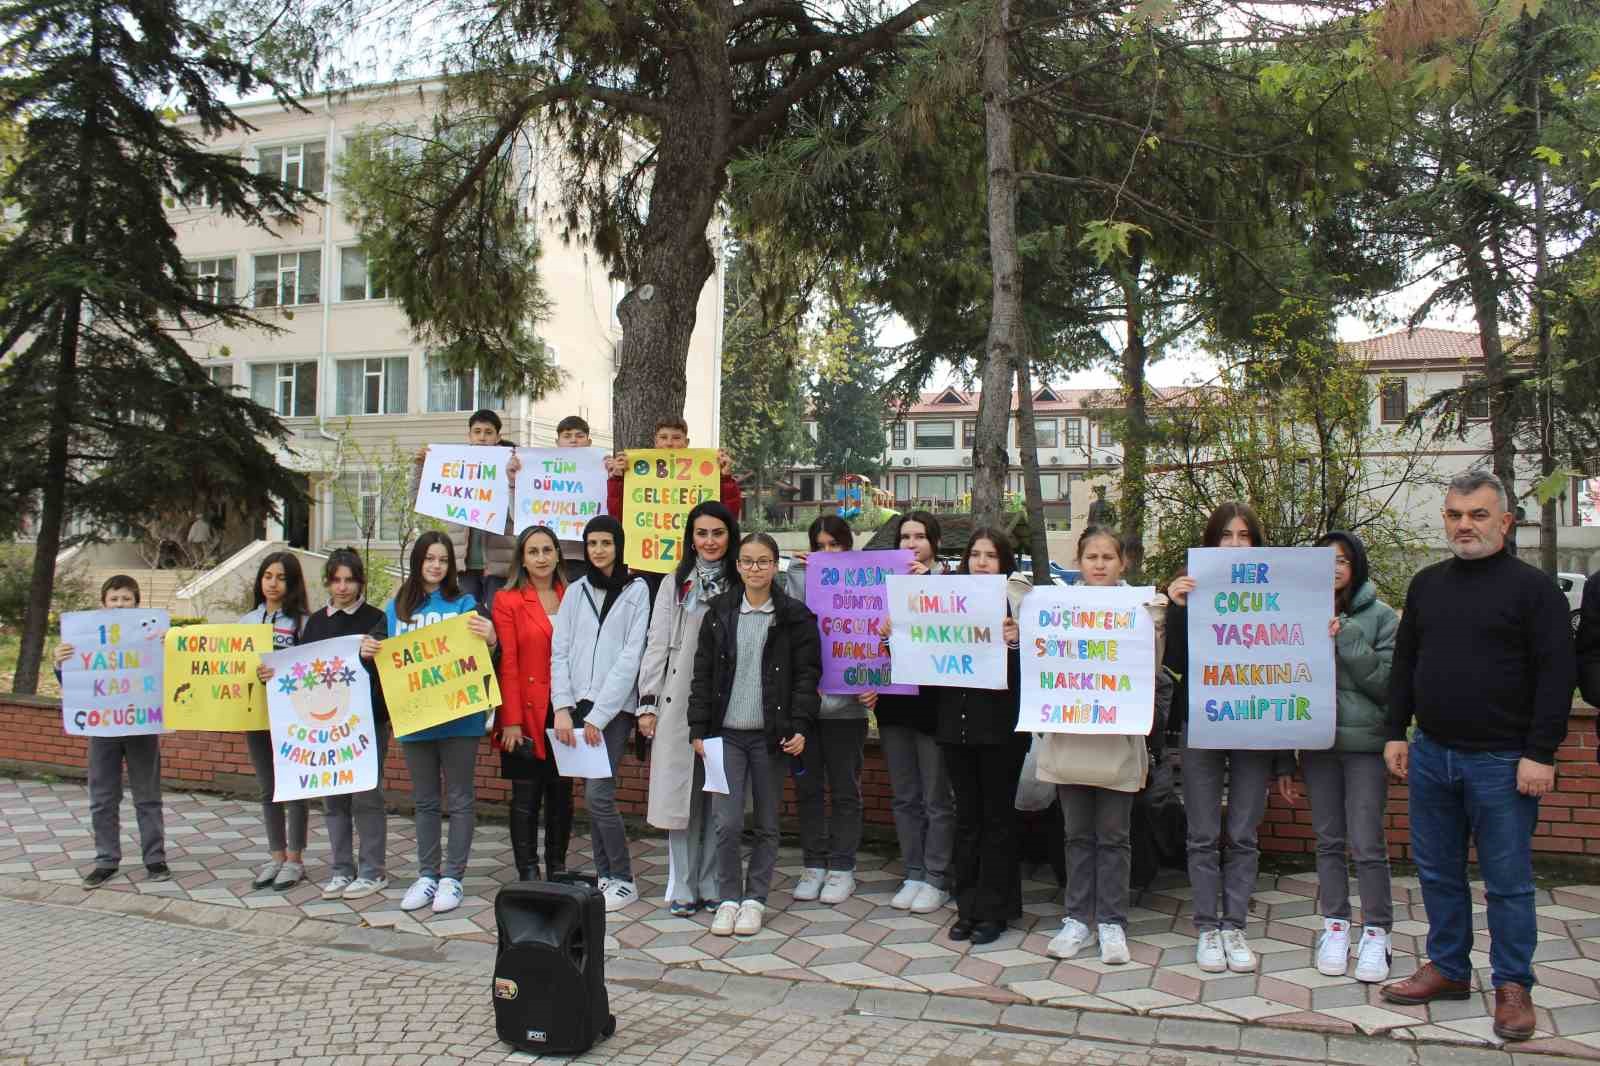 20 Kasım Dünya Çocuk Hakları Günü dolayısıyla Çocuk Hakları Bildirgesini okudular